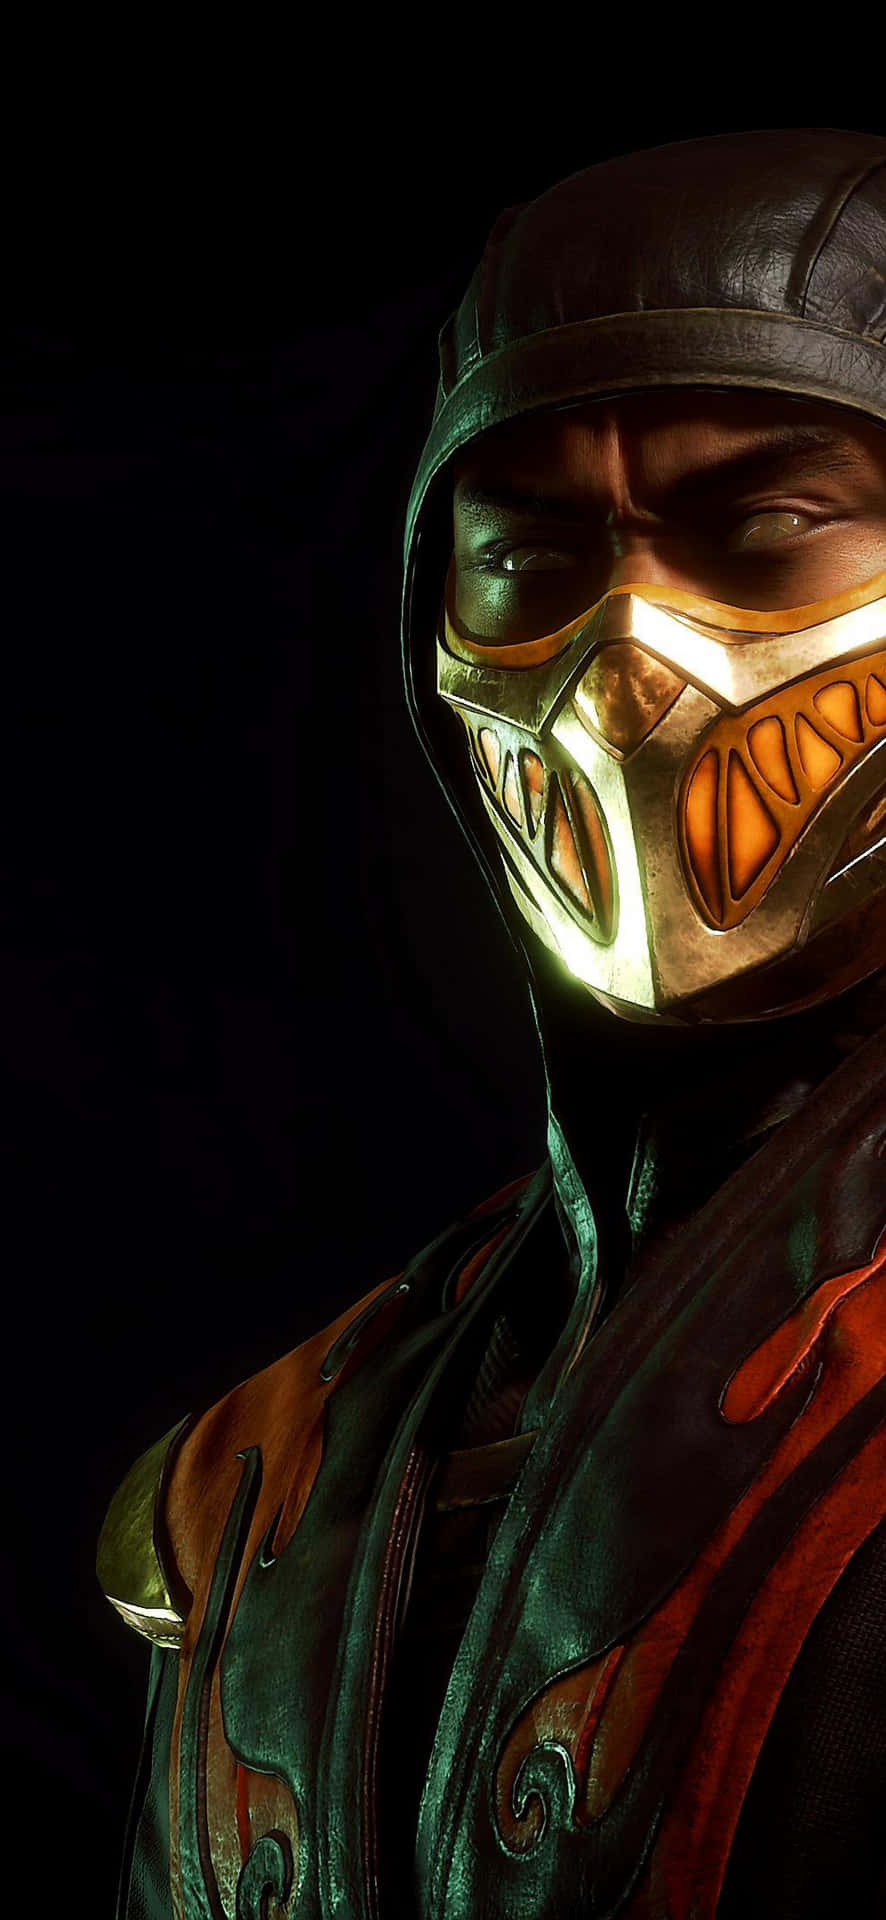 Bildmach Dich Bereit Für Eine Intensive Schlacht Mit Mortal Kombat Auf Deinem Iphone Wallpaper